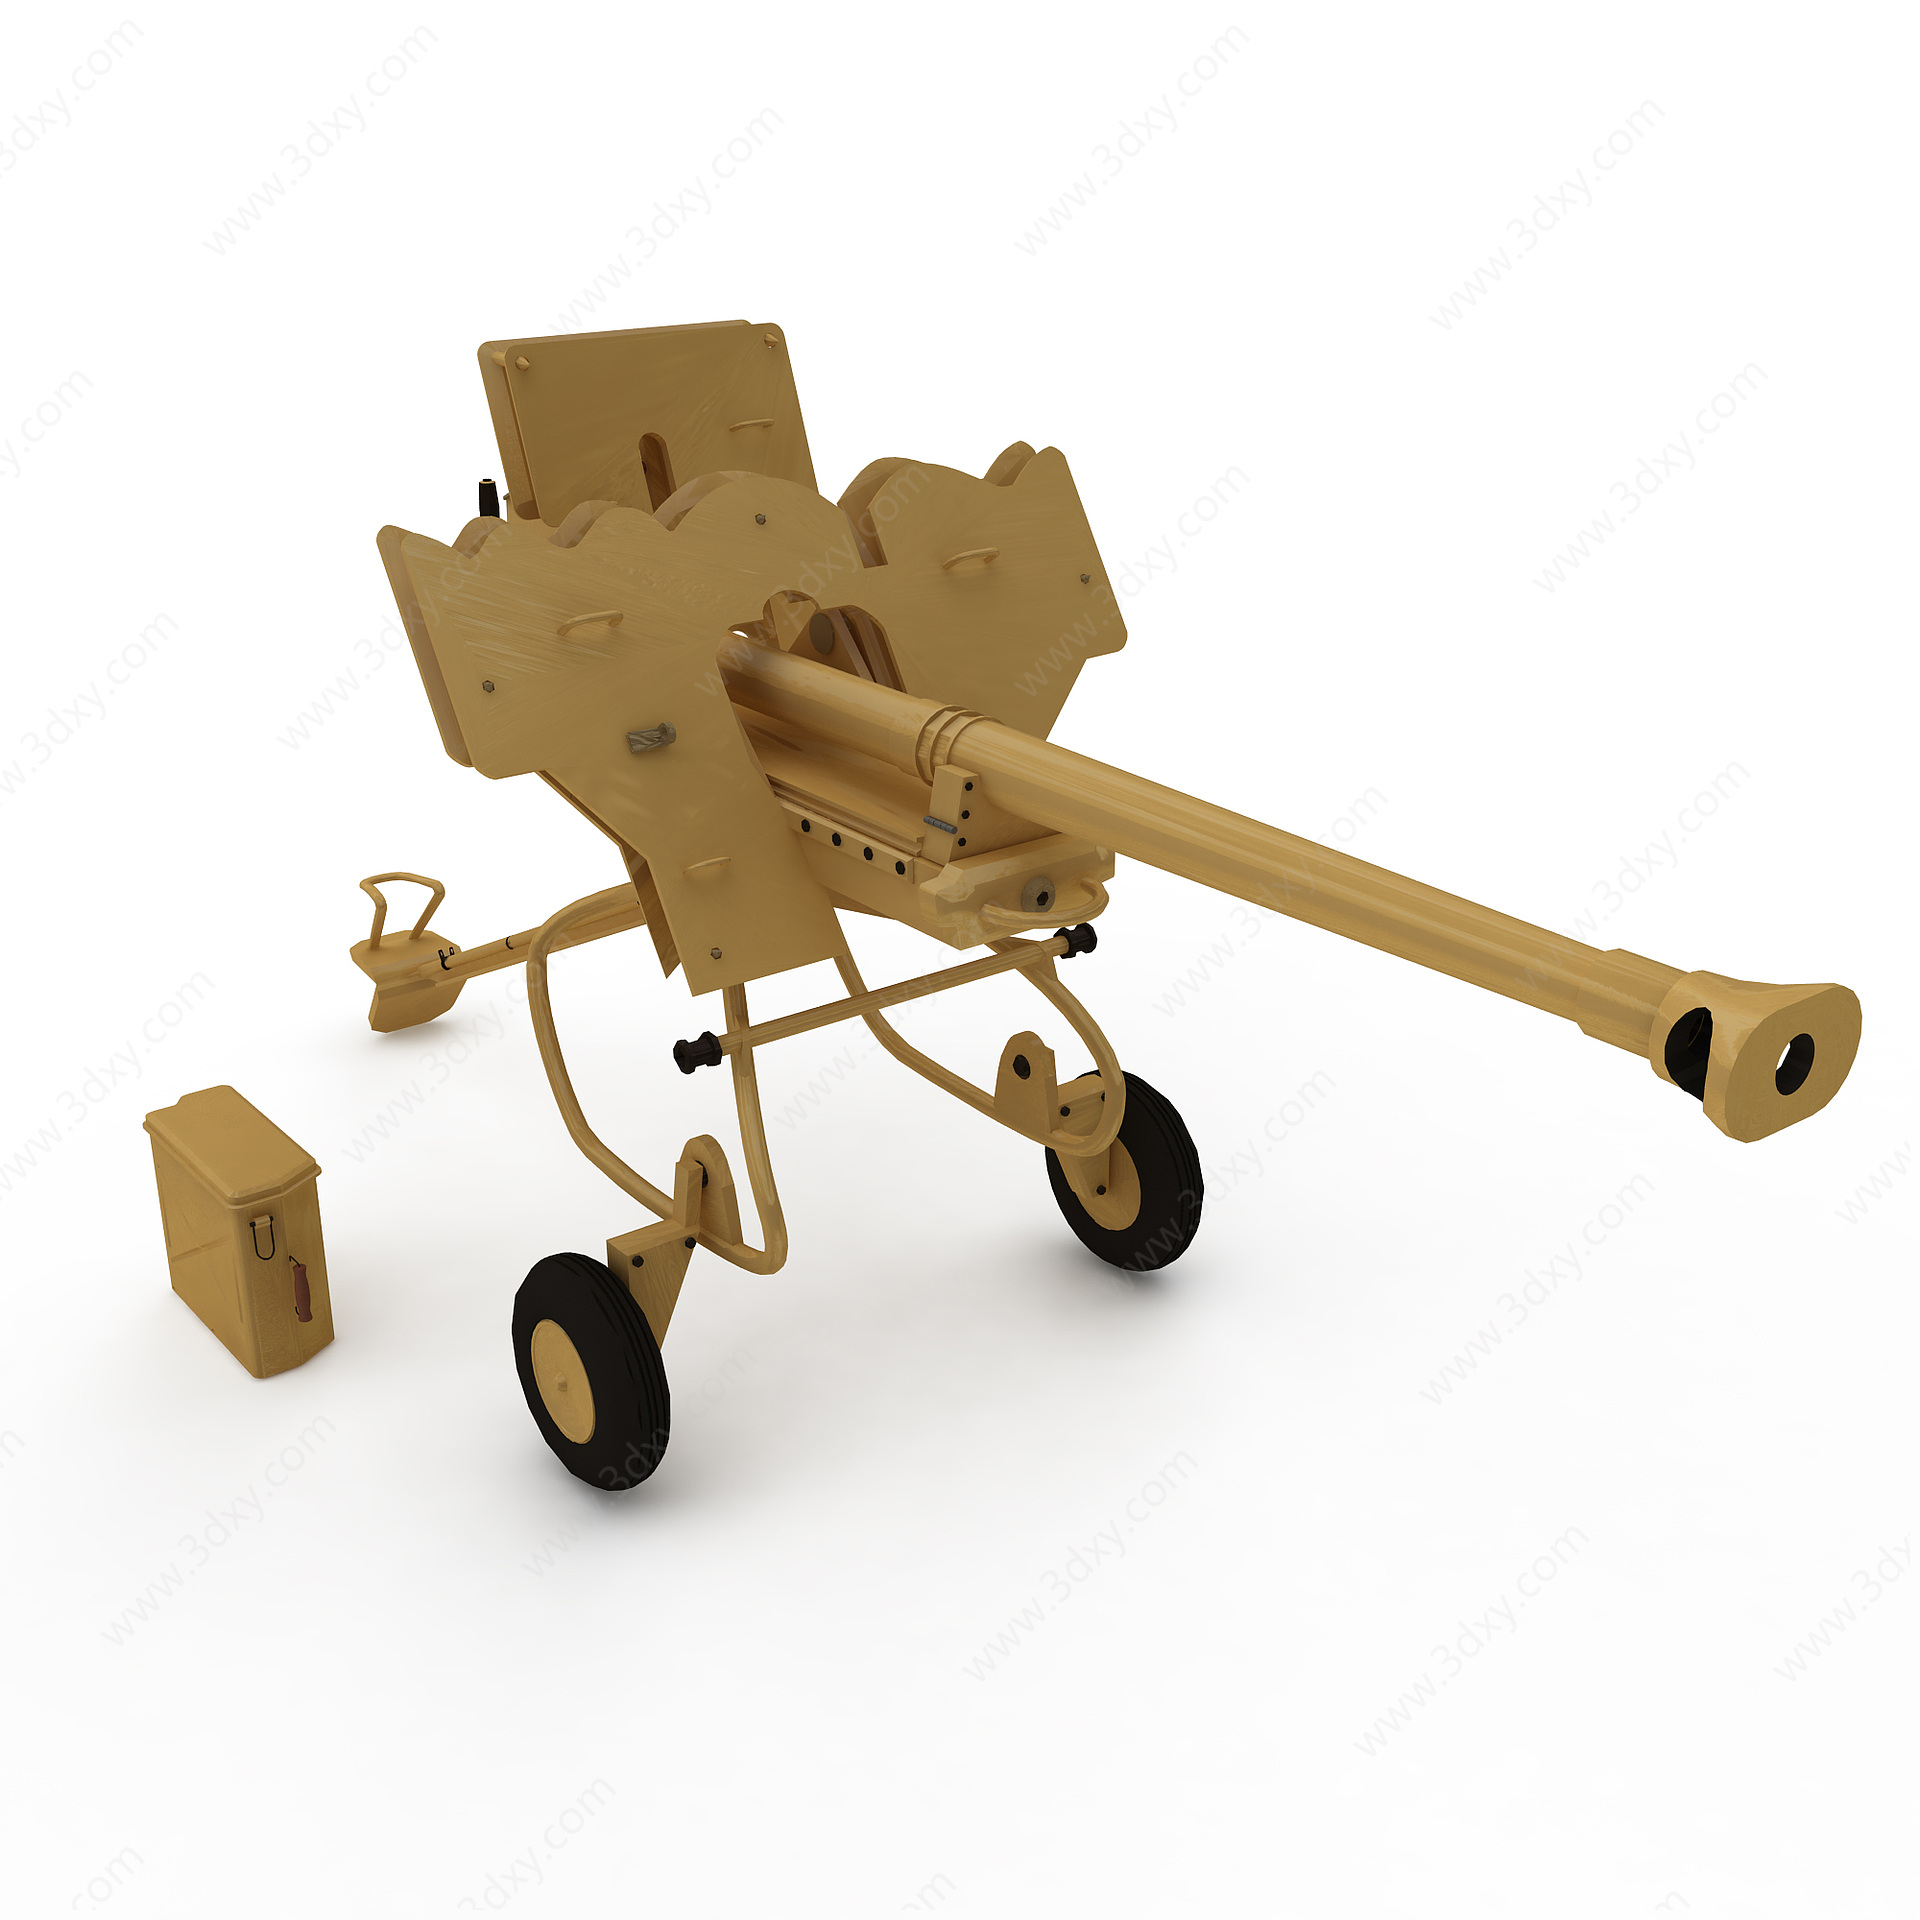 40型128毫米防空炮3D模型